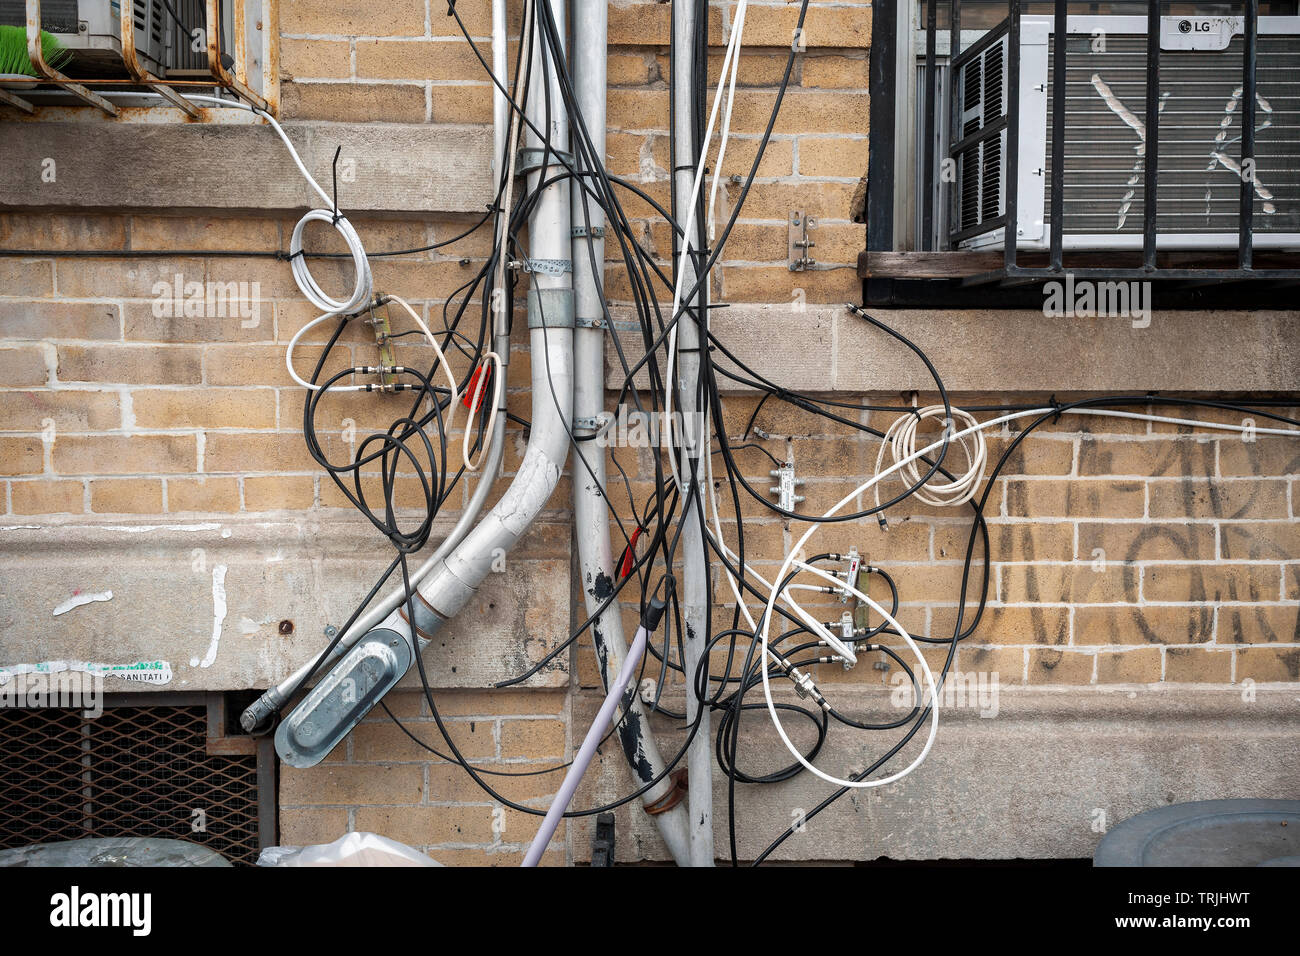 Un des fils et câbles de téléphone, d'internet et d'autres utilitaires sur l'extérieur d'un immeuble d'appartements à Brooklyn à New York le samedi, Juin 1, 2019. (© Richard B. Levine) Banque D'Images